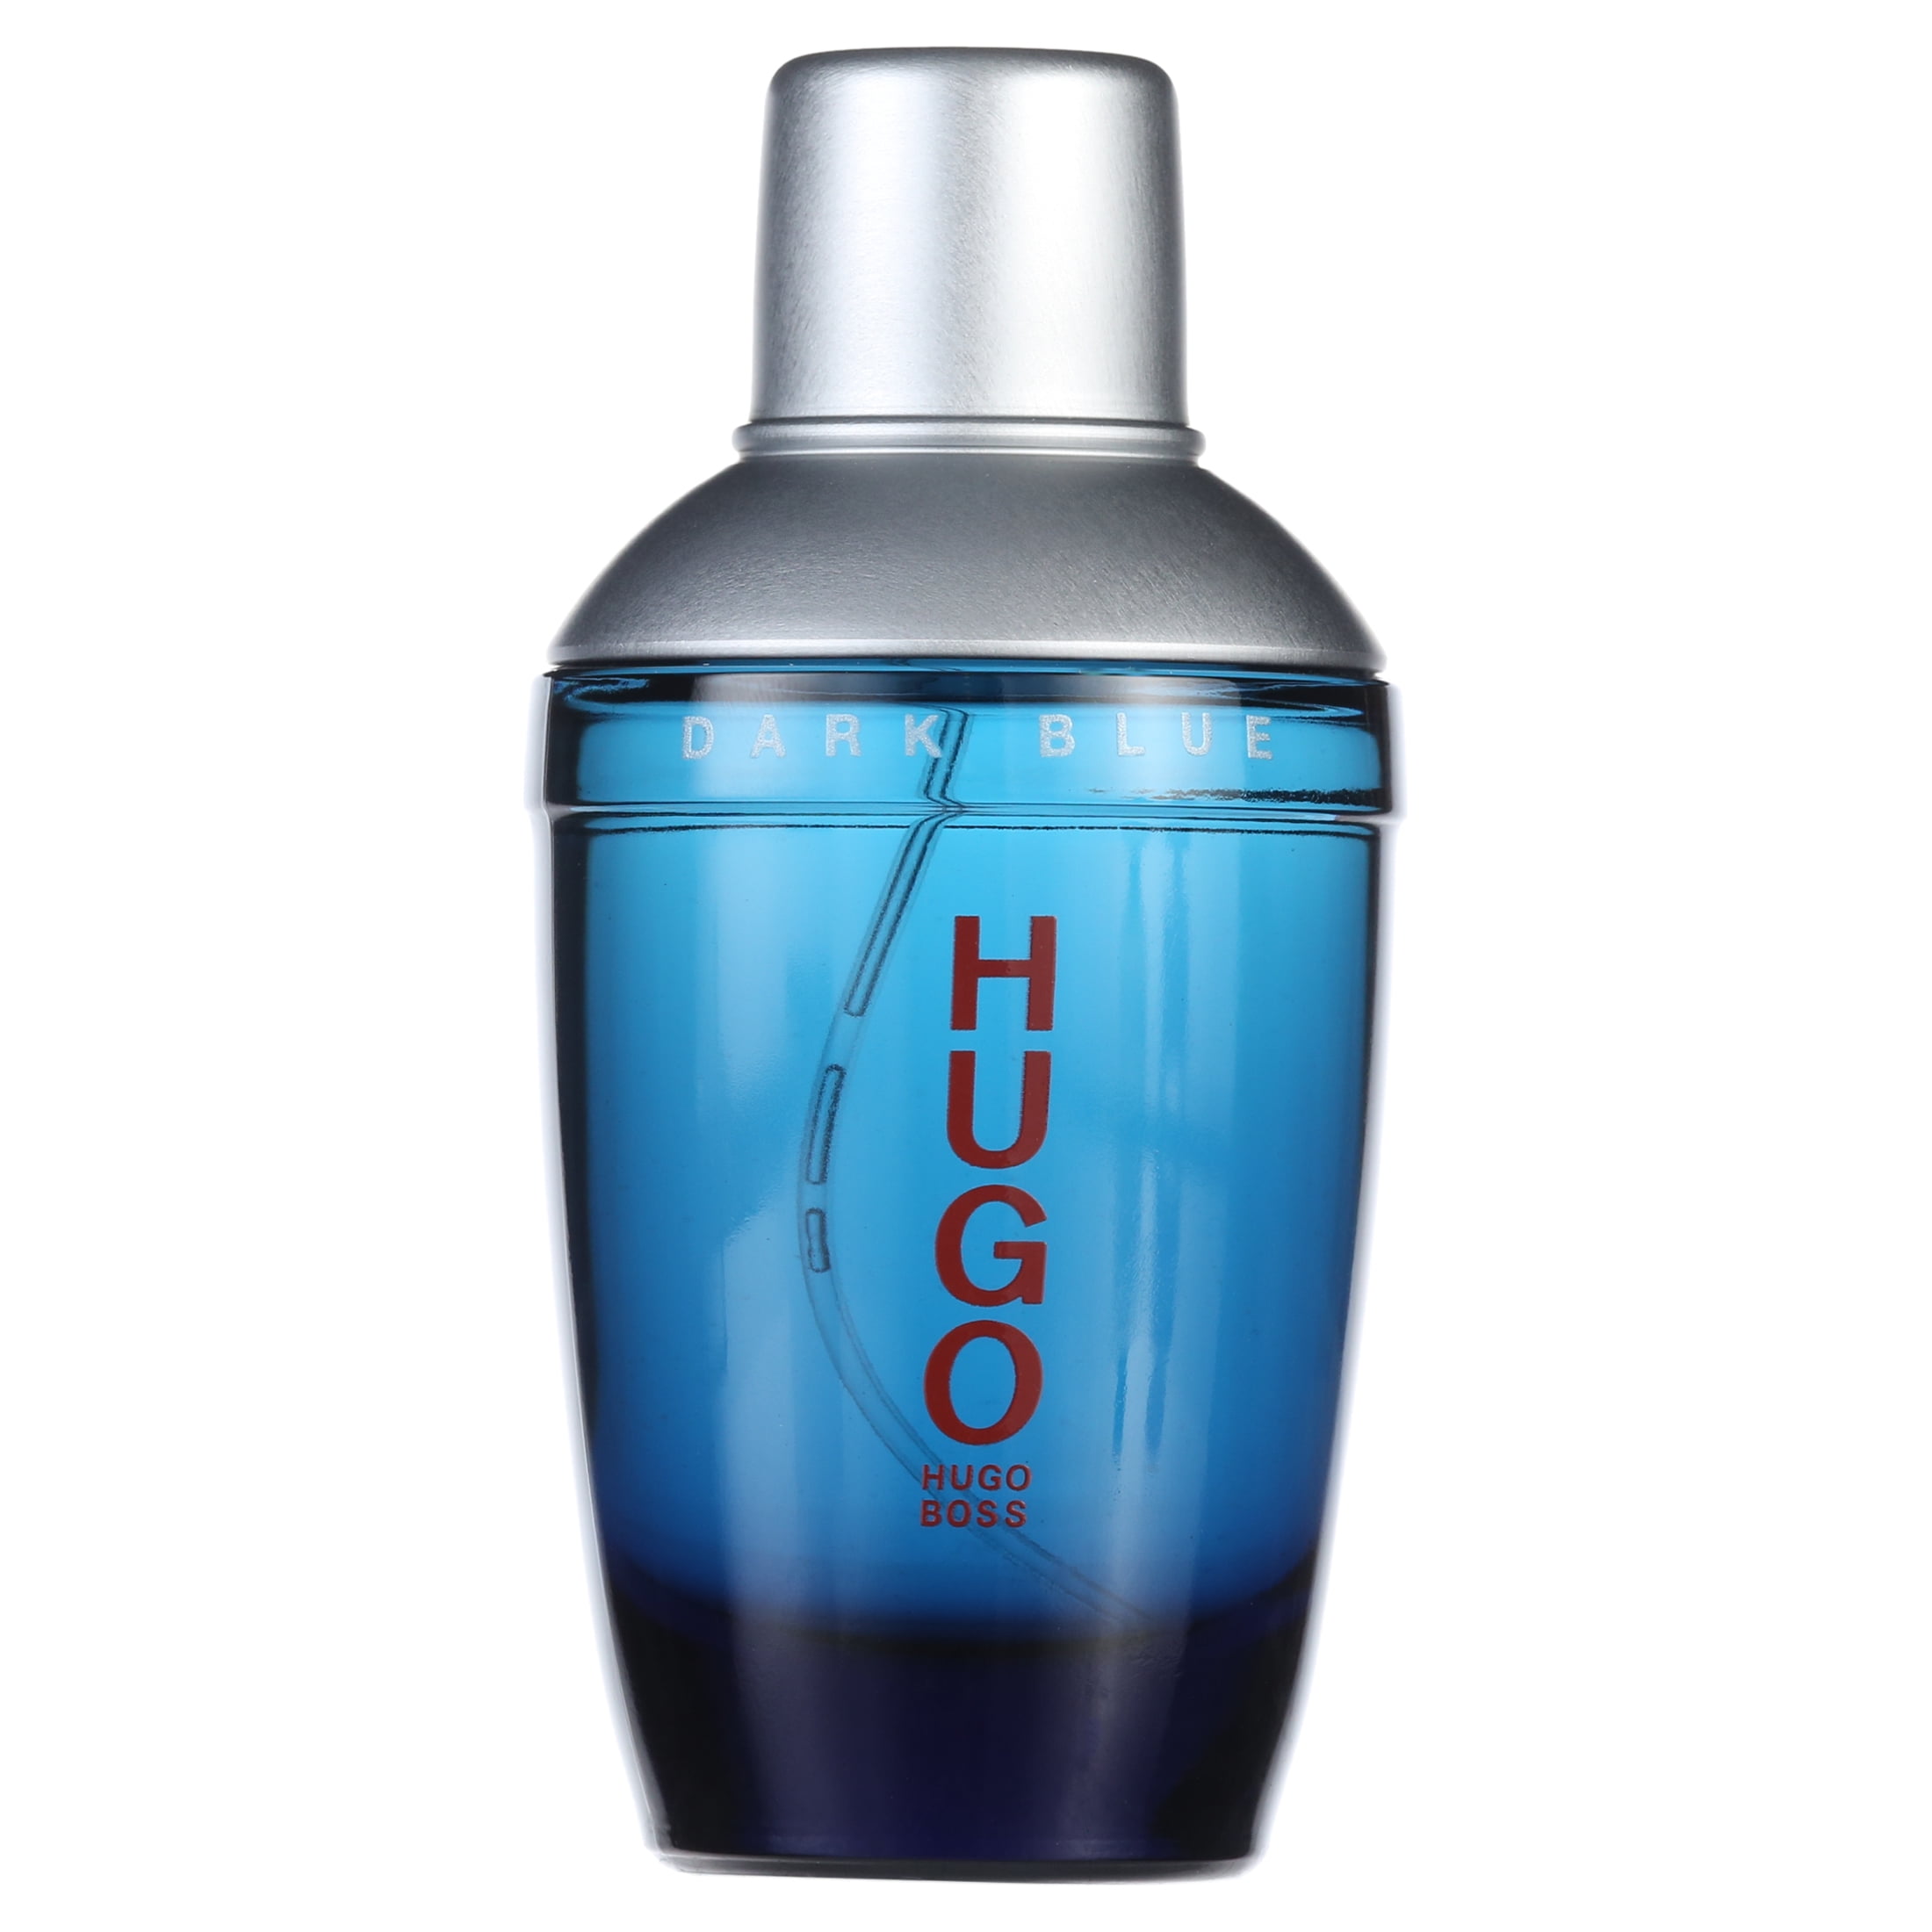 HUGO BOSS Hugo Dark Blue Eau de Toilette, Cologne Egypt | Ubuy